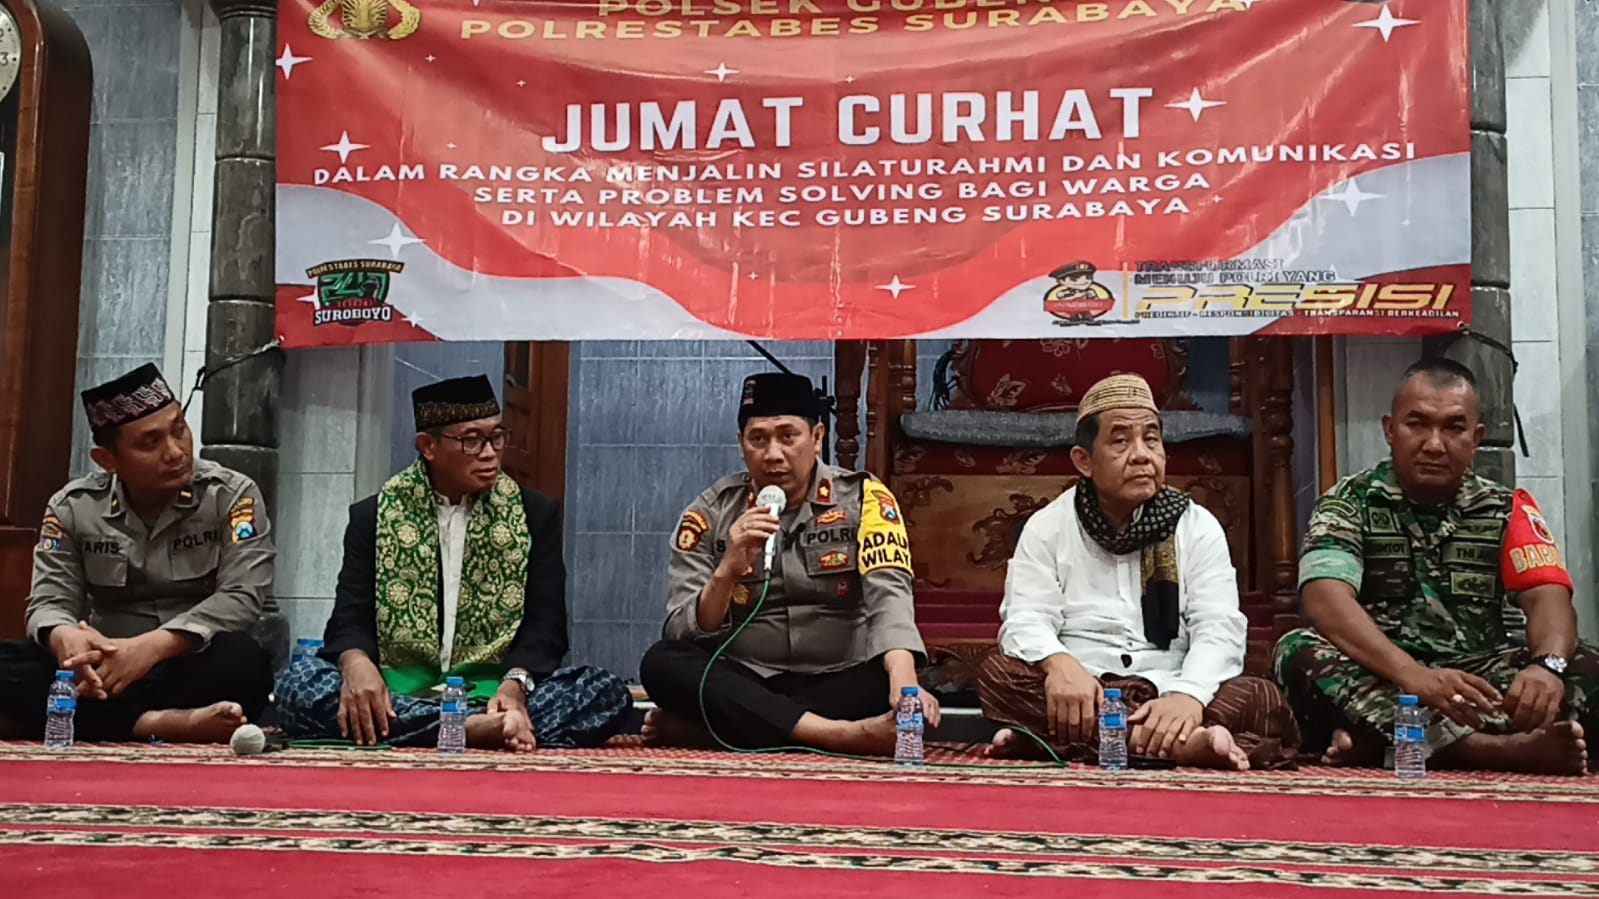 Gelar Jum’at Curhat, Polsek Gubeng Jalin Silaturahmi Dengan Masyarakat